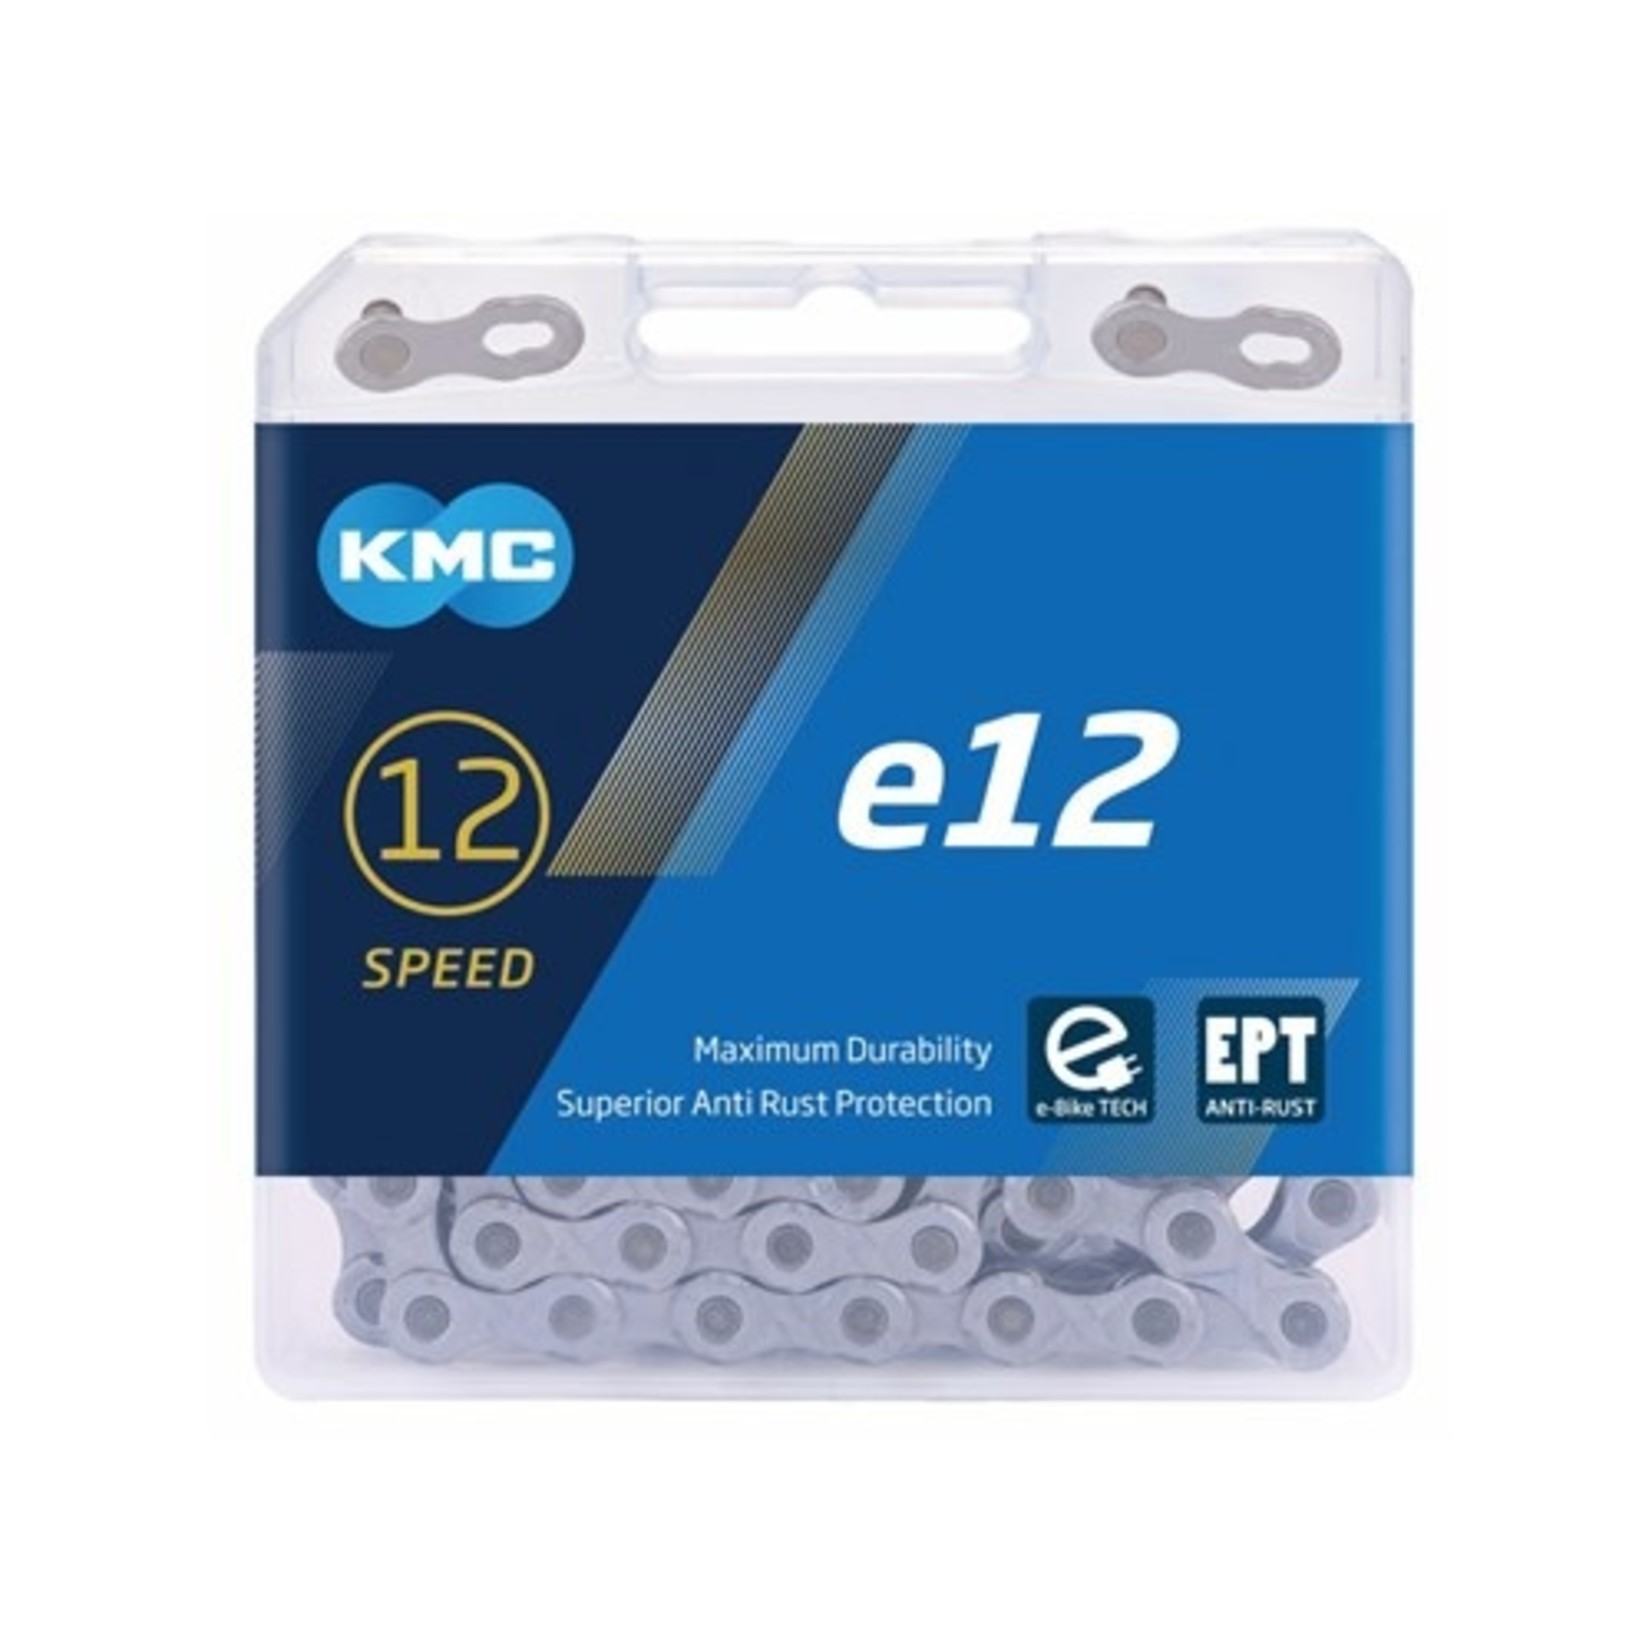 KMC KMC E-Bike Chain - E12 Turbo 12 Speed - 1/2" X 11/128" EPT Anti-Rust